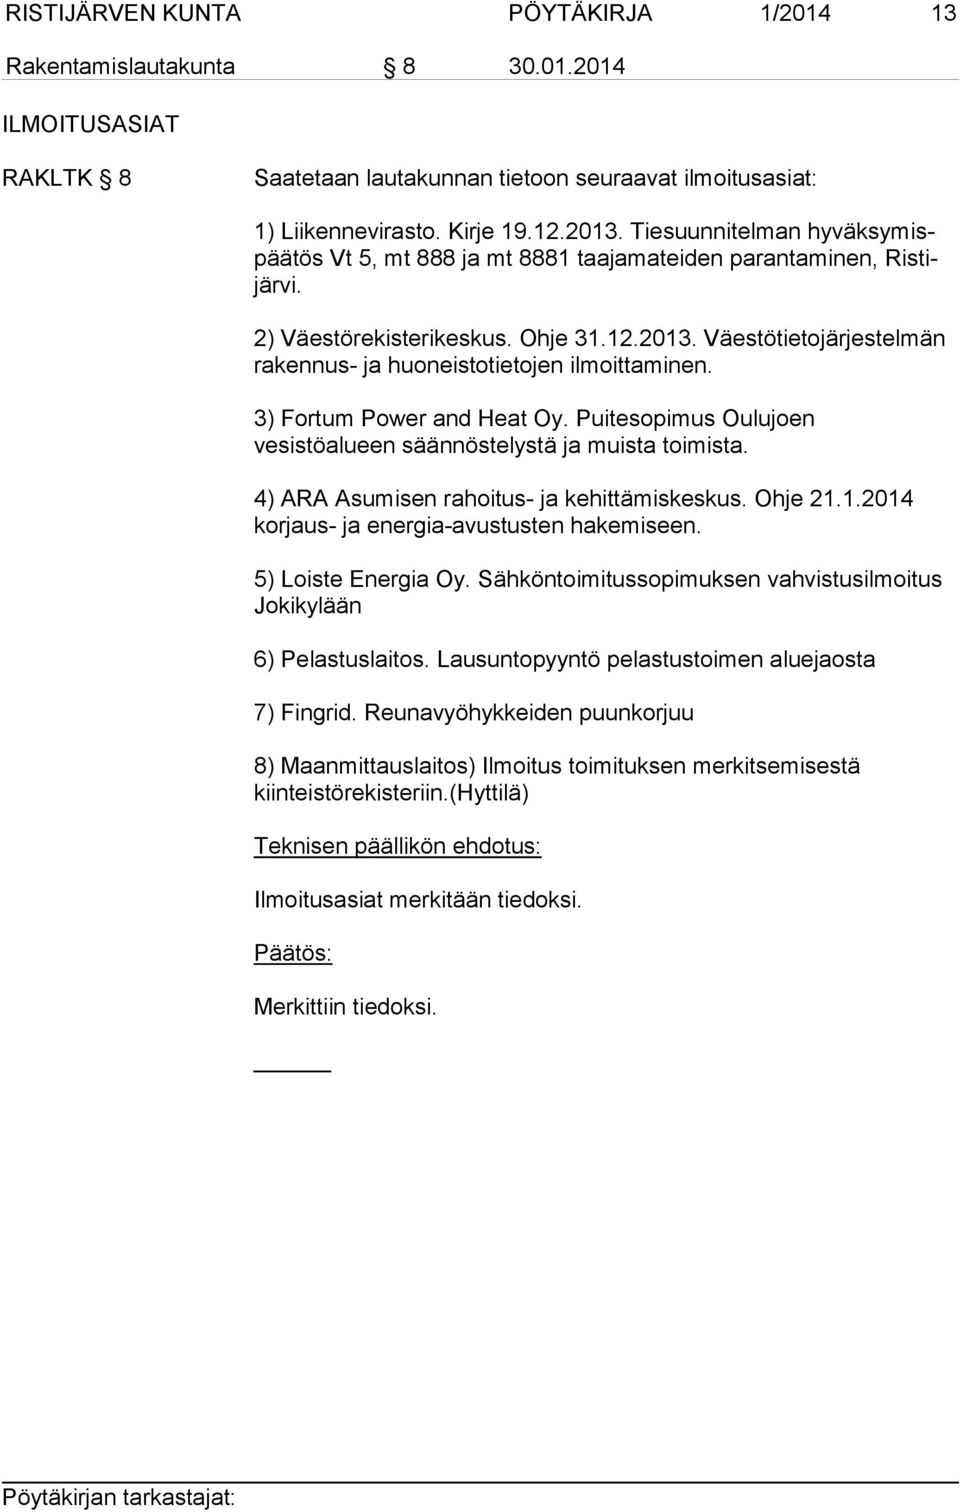 Väestötietojärjestelmän rakennus- ja huoneistotietojen ilmoittaminen. 3) Fortum Power and Heat Oy. Puitesopimus Oulujoen vesistöalueen säännöstelystä ja muista toimista.